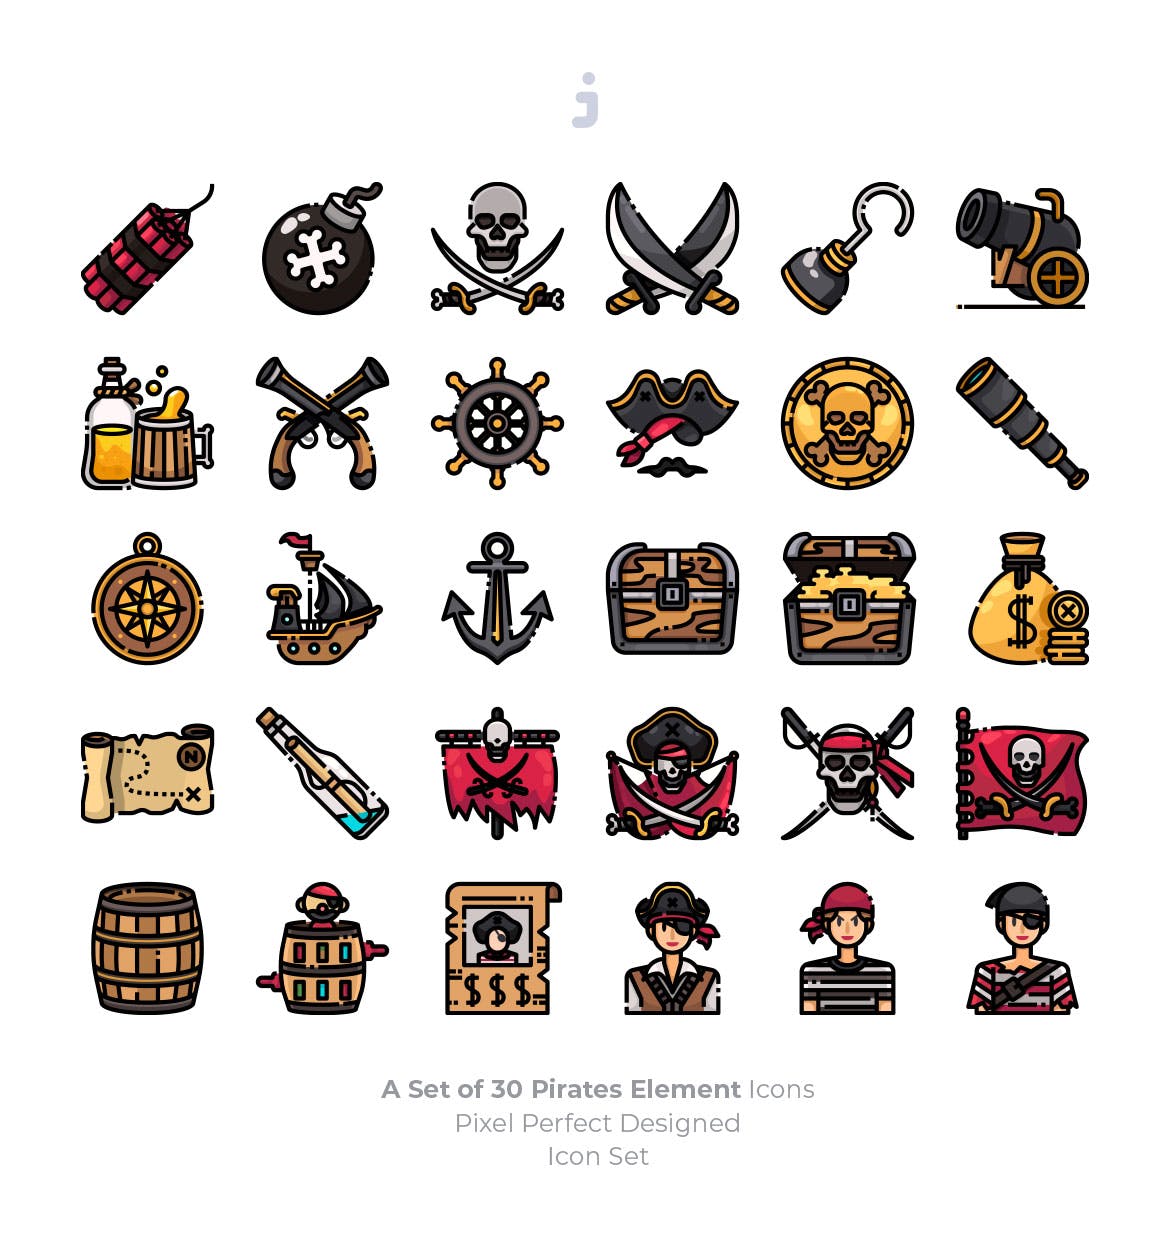 海盗元素矢量图标素材 30 Pirates Element